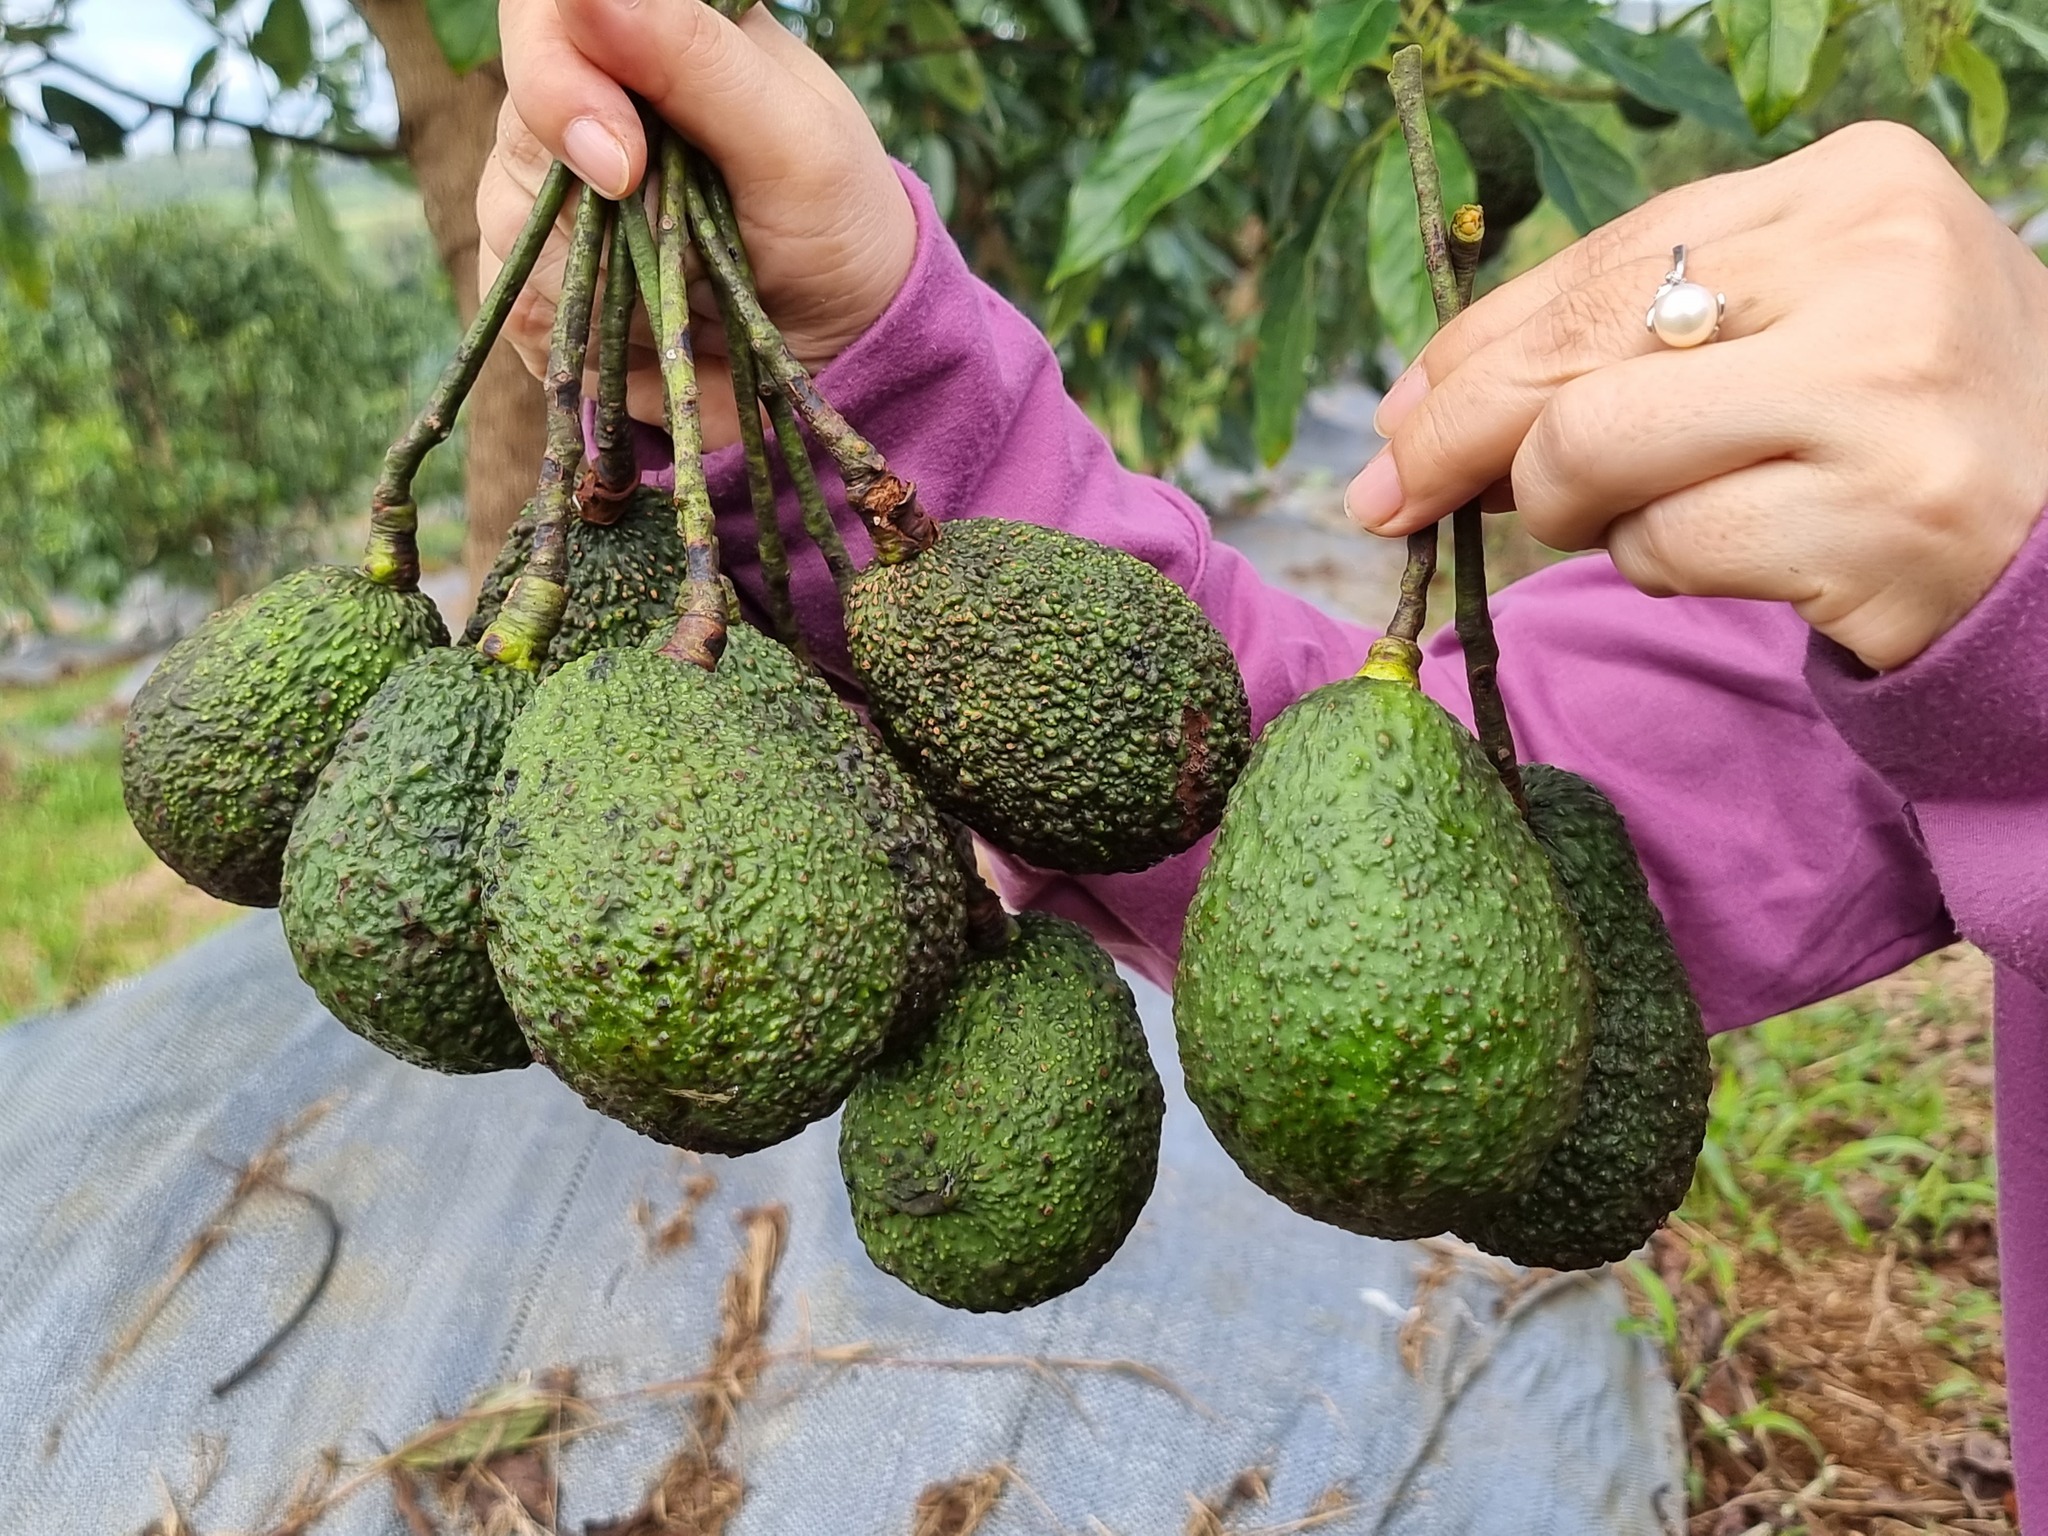 Lcd fruit vietnam avocado supplier